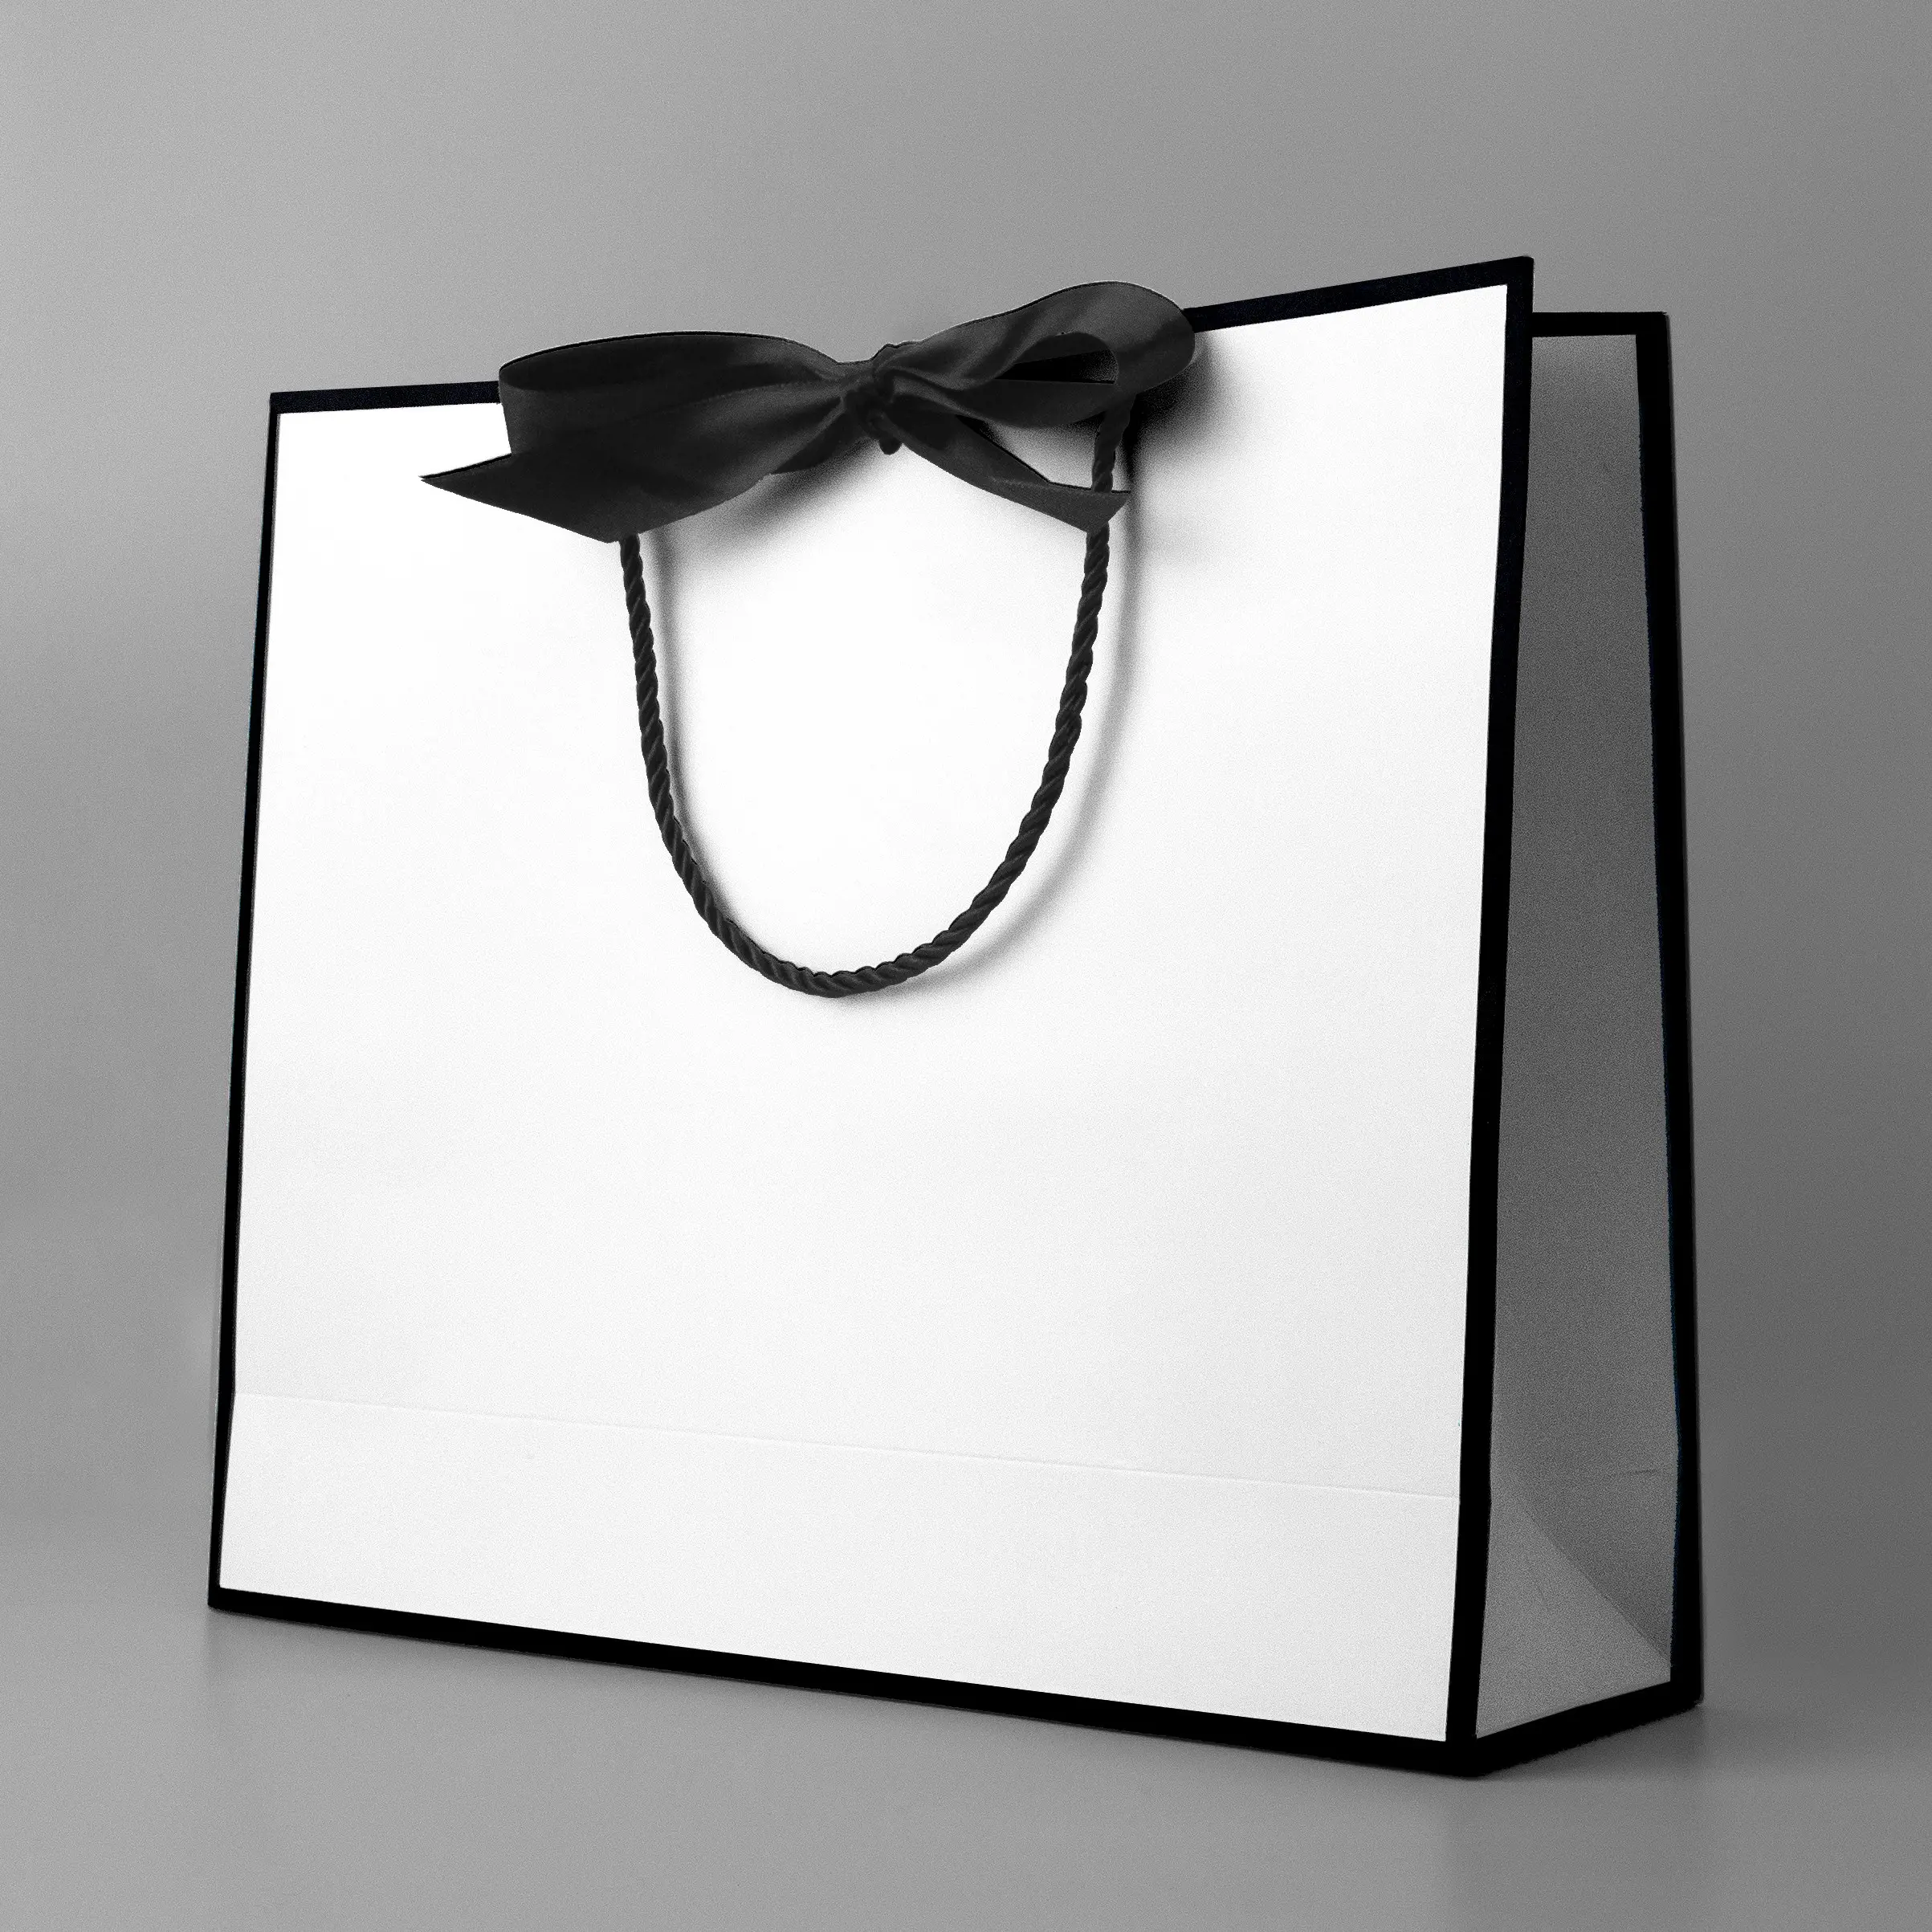 ZYCX özel lüks şerit kolu beyaz karton alışveriş ambalaj çanta kendi logonuz ile özelleştirilmiş baskılı kağıt hediye keseleri